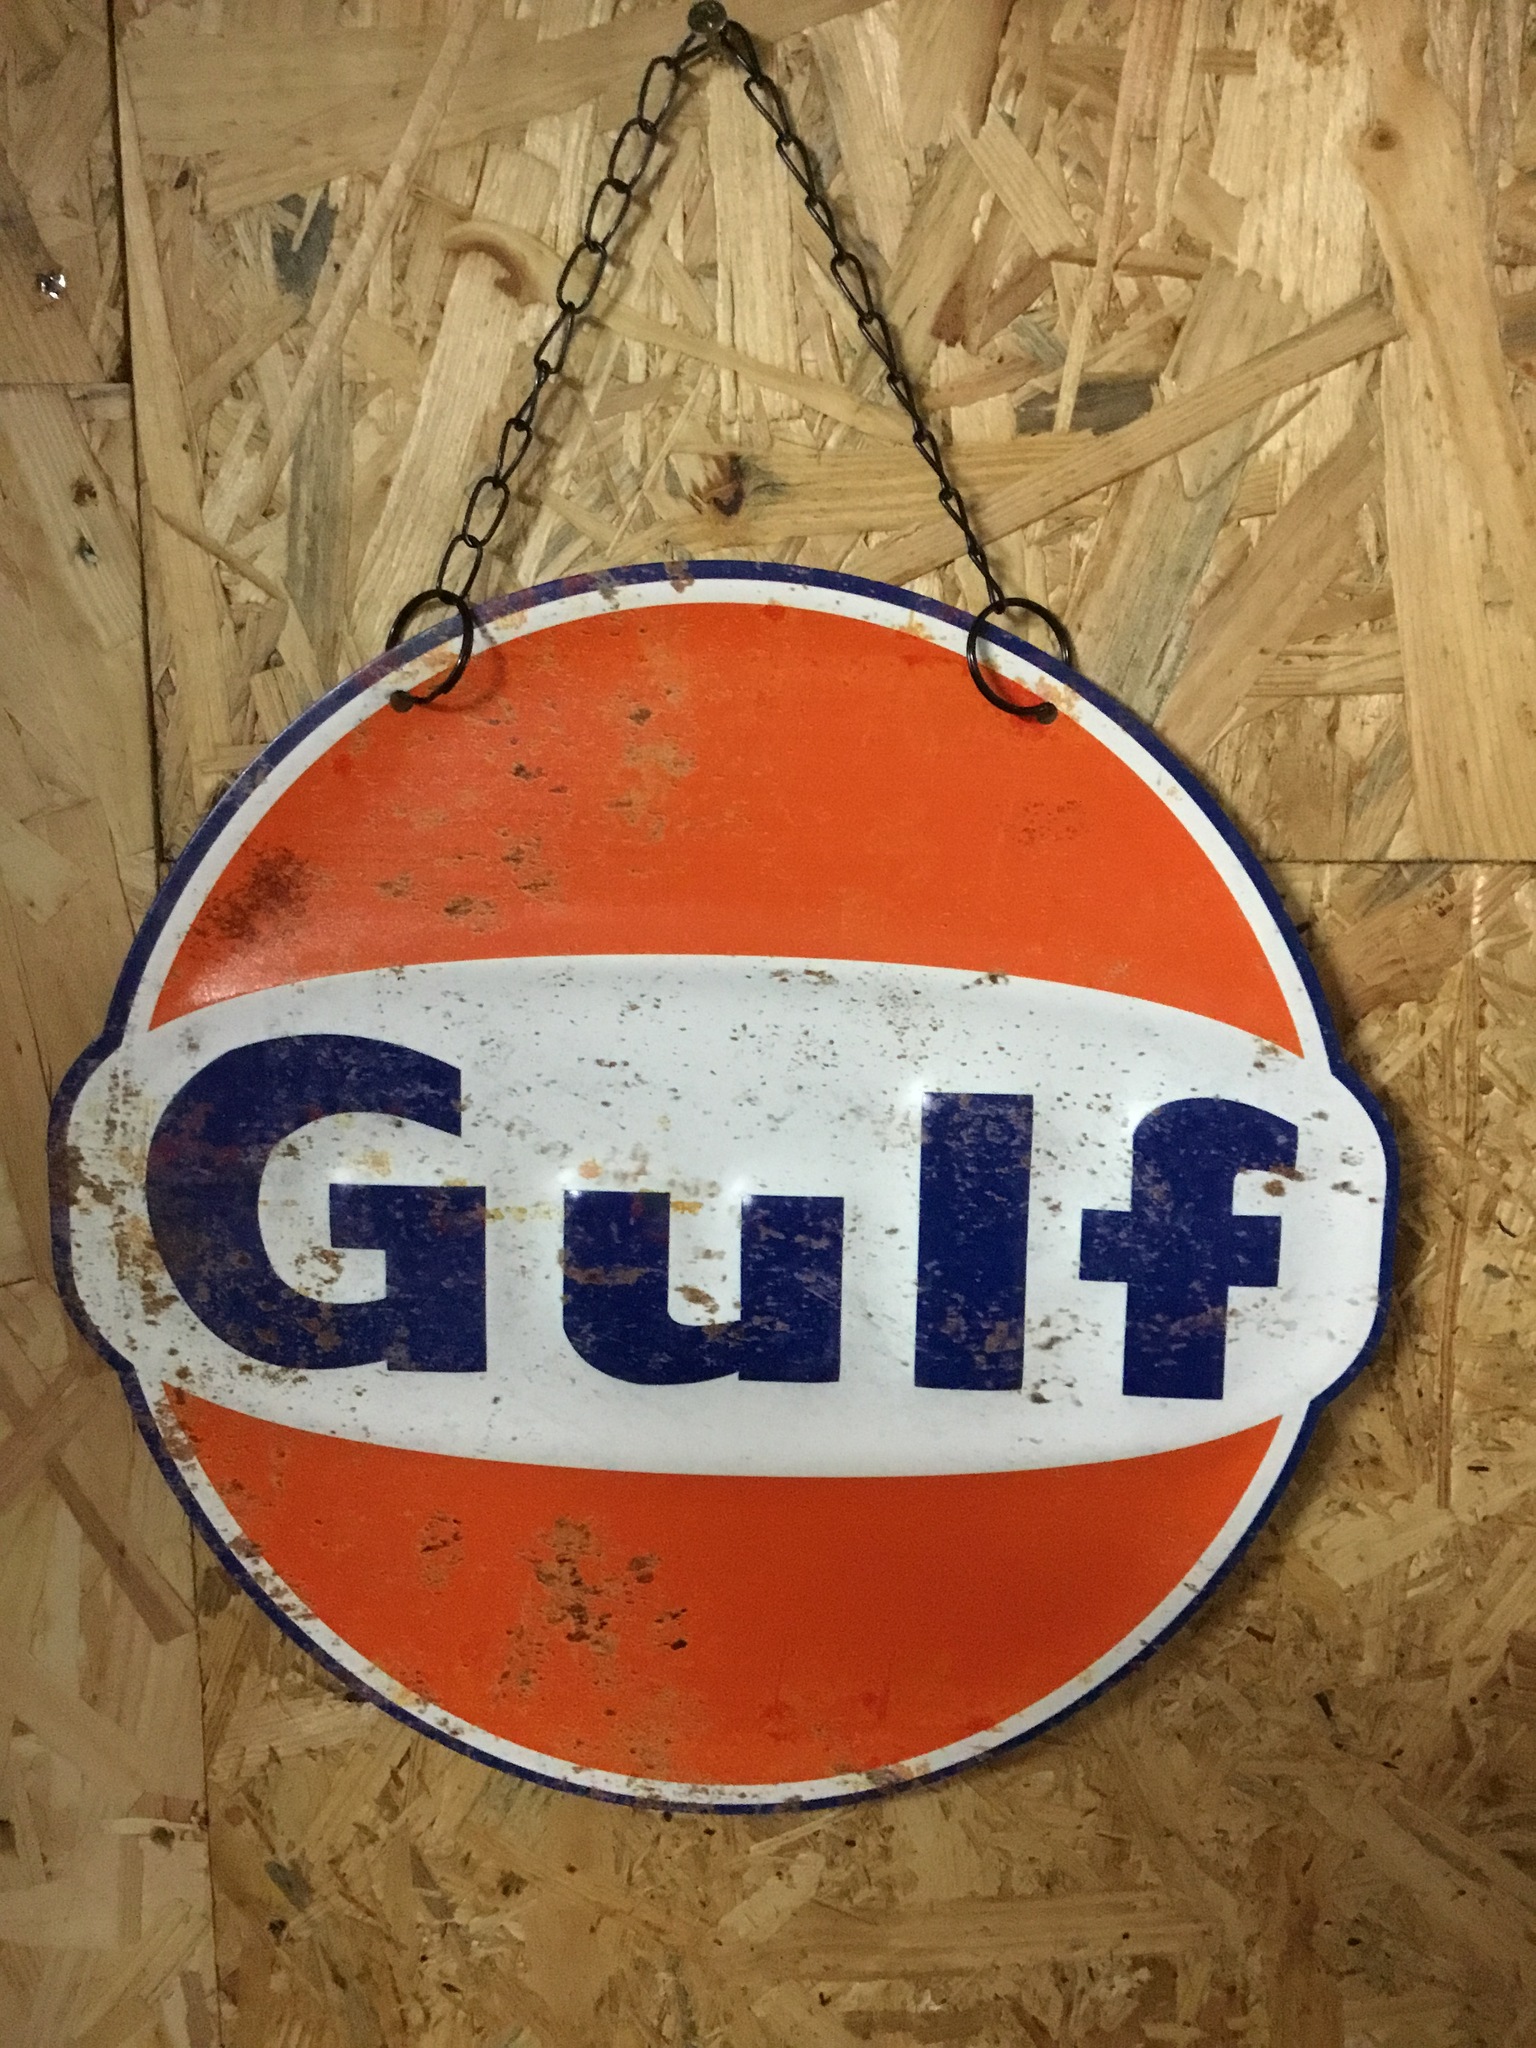 Gulf Plåtskylt